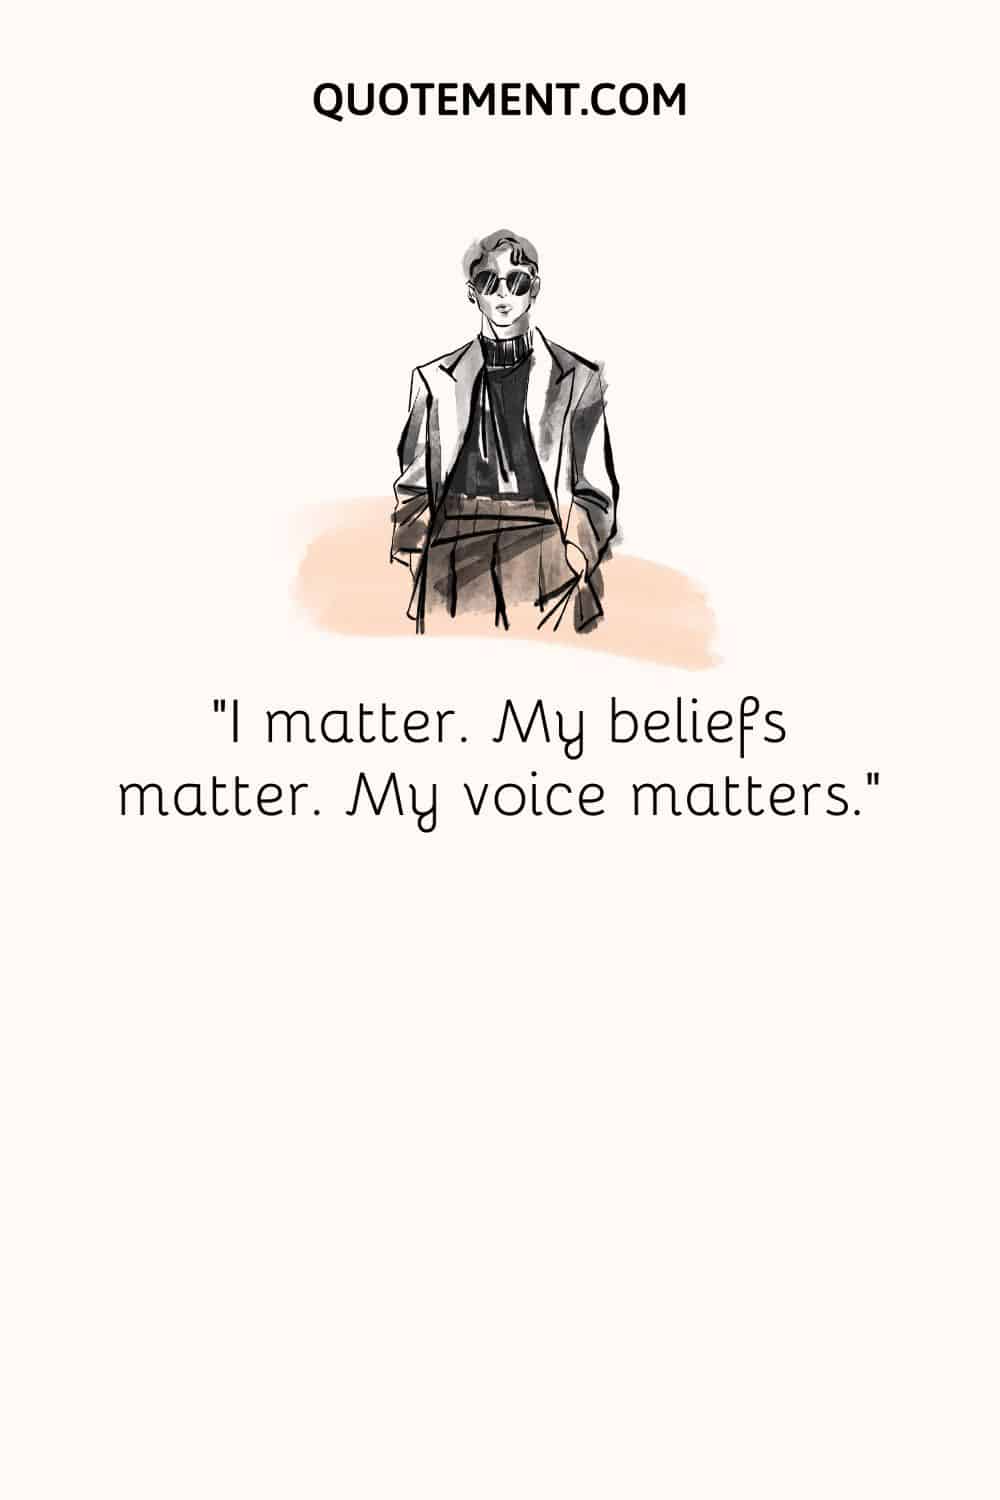 I matter. My beliefs matter. My voice matters